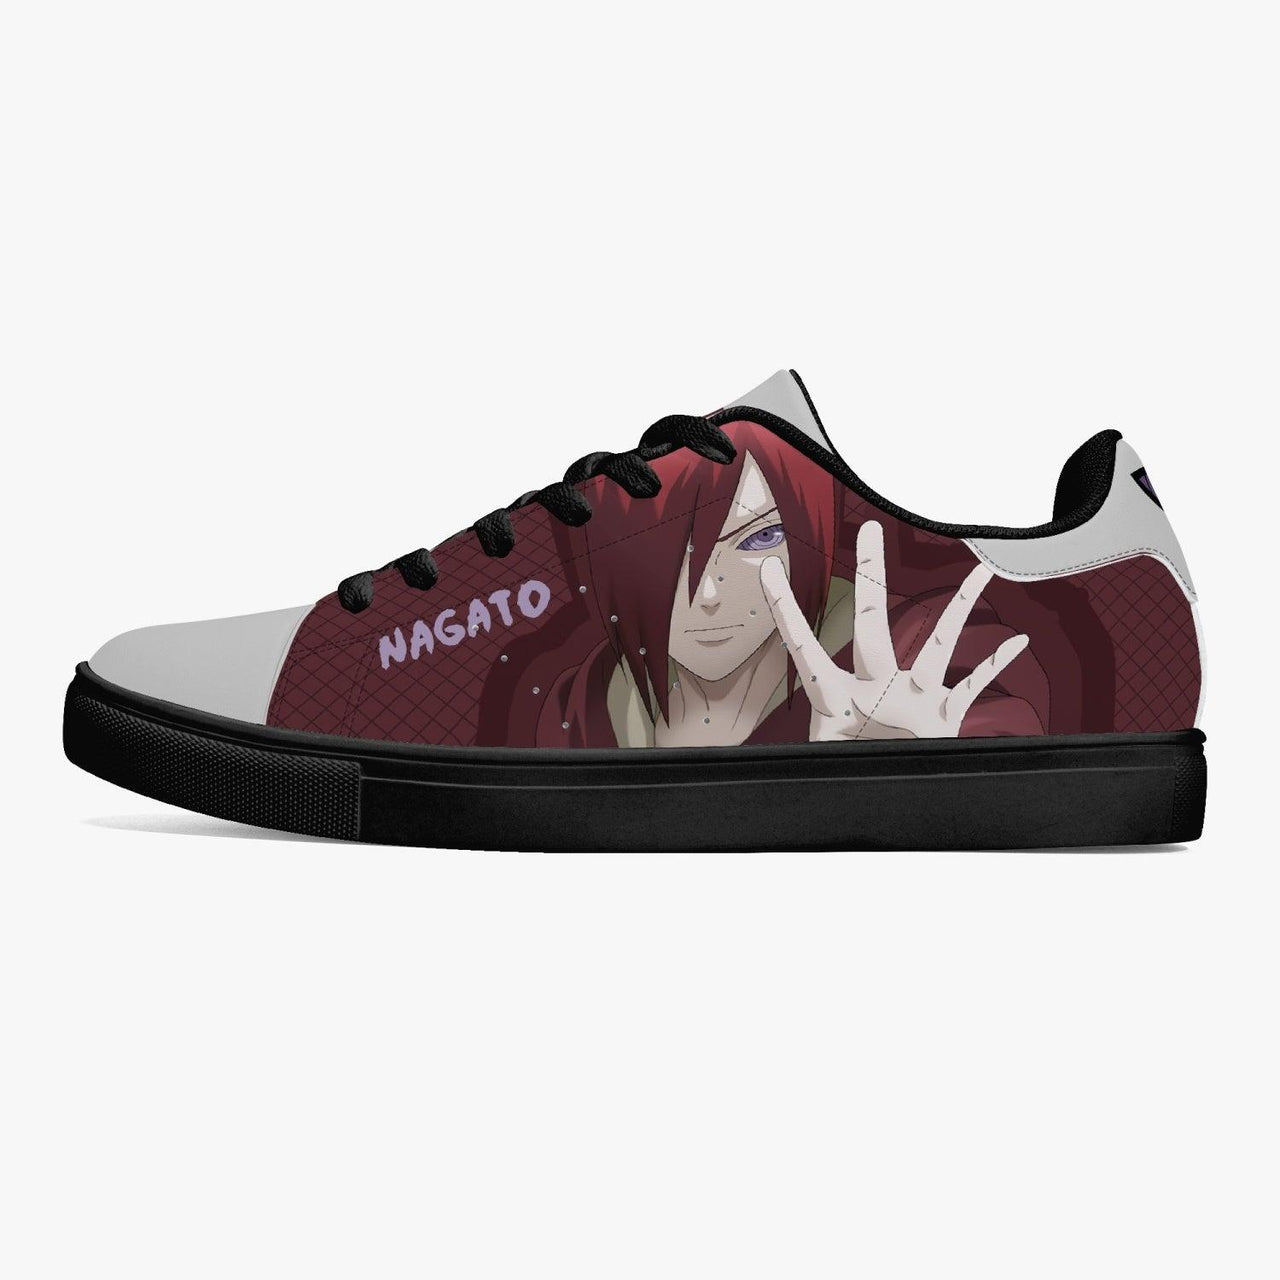 Naruto Shippuden Nagato Skate Anime Shoes _ Naruto _ Ayuko